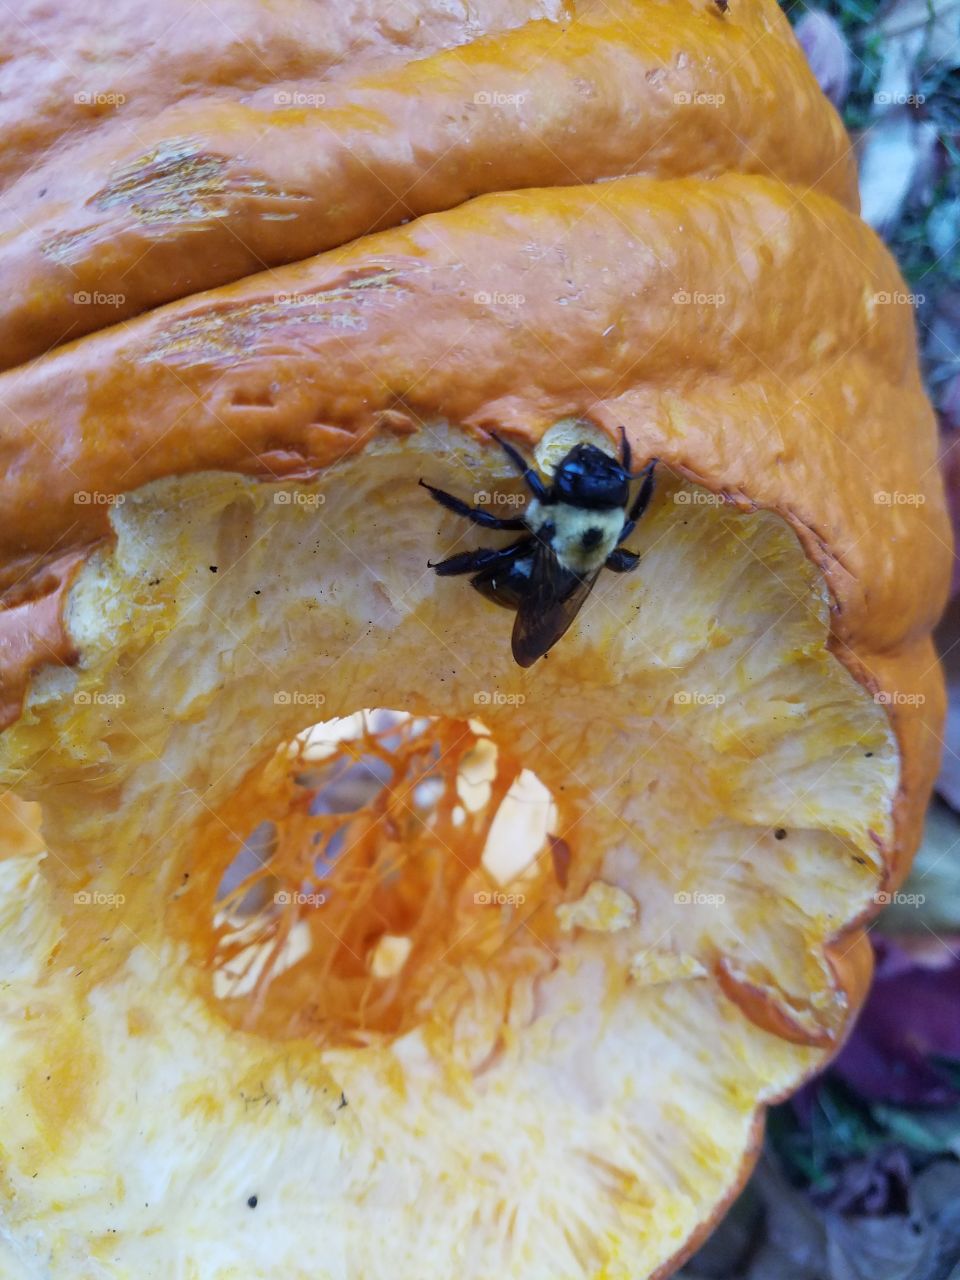 Bee enjoying our pumpkin